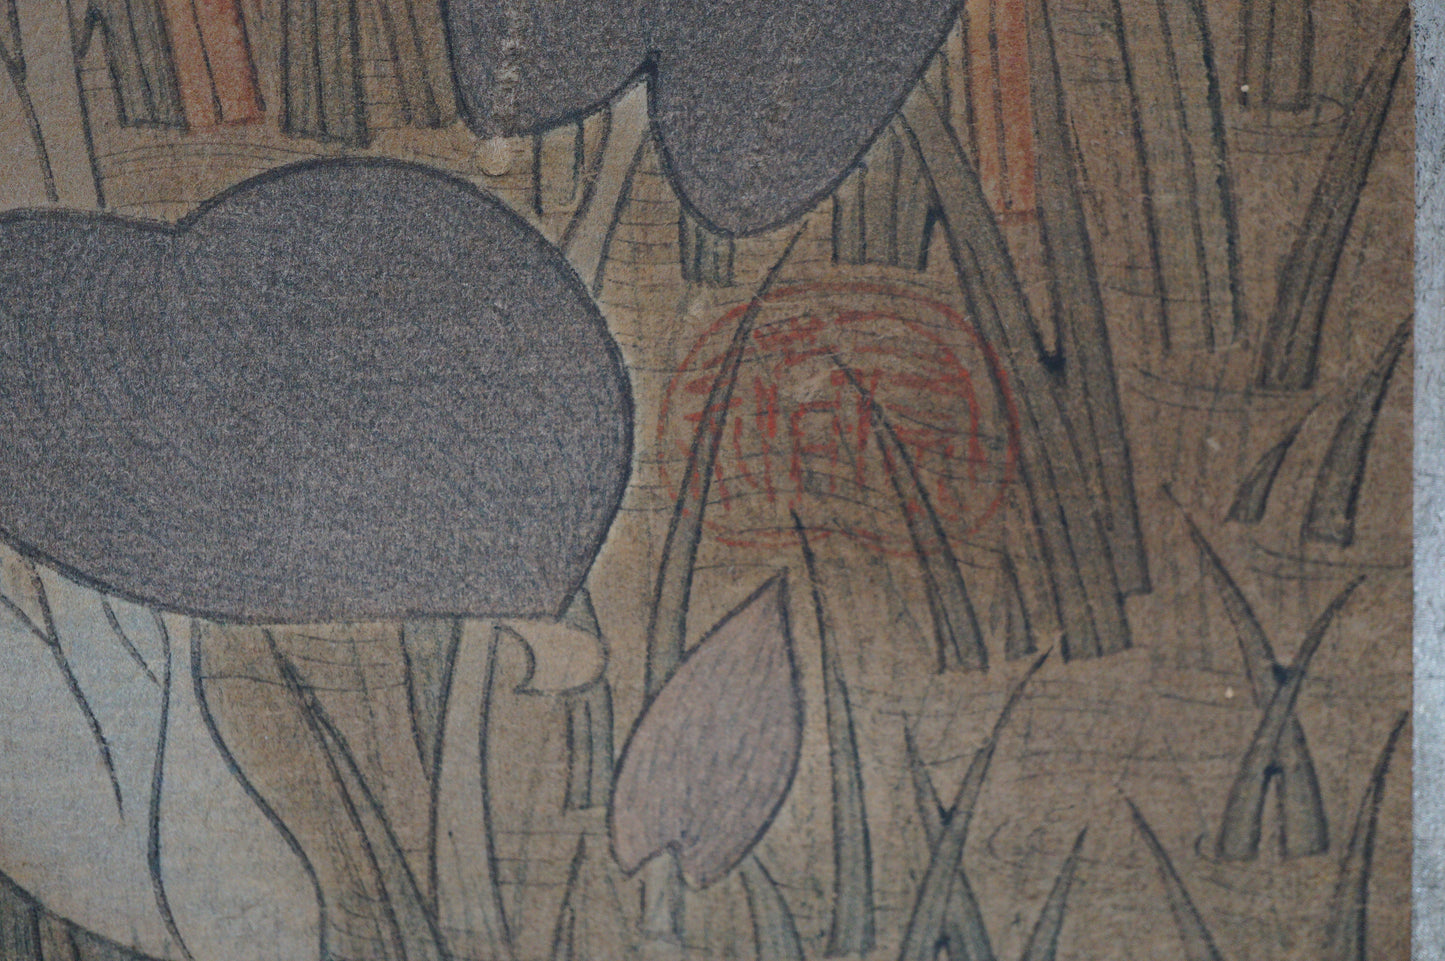 Japanese Woodblock Print -Herons & Aquatic Plants- by Kano Tanyu 0105E17